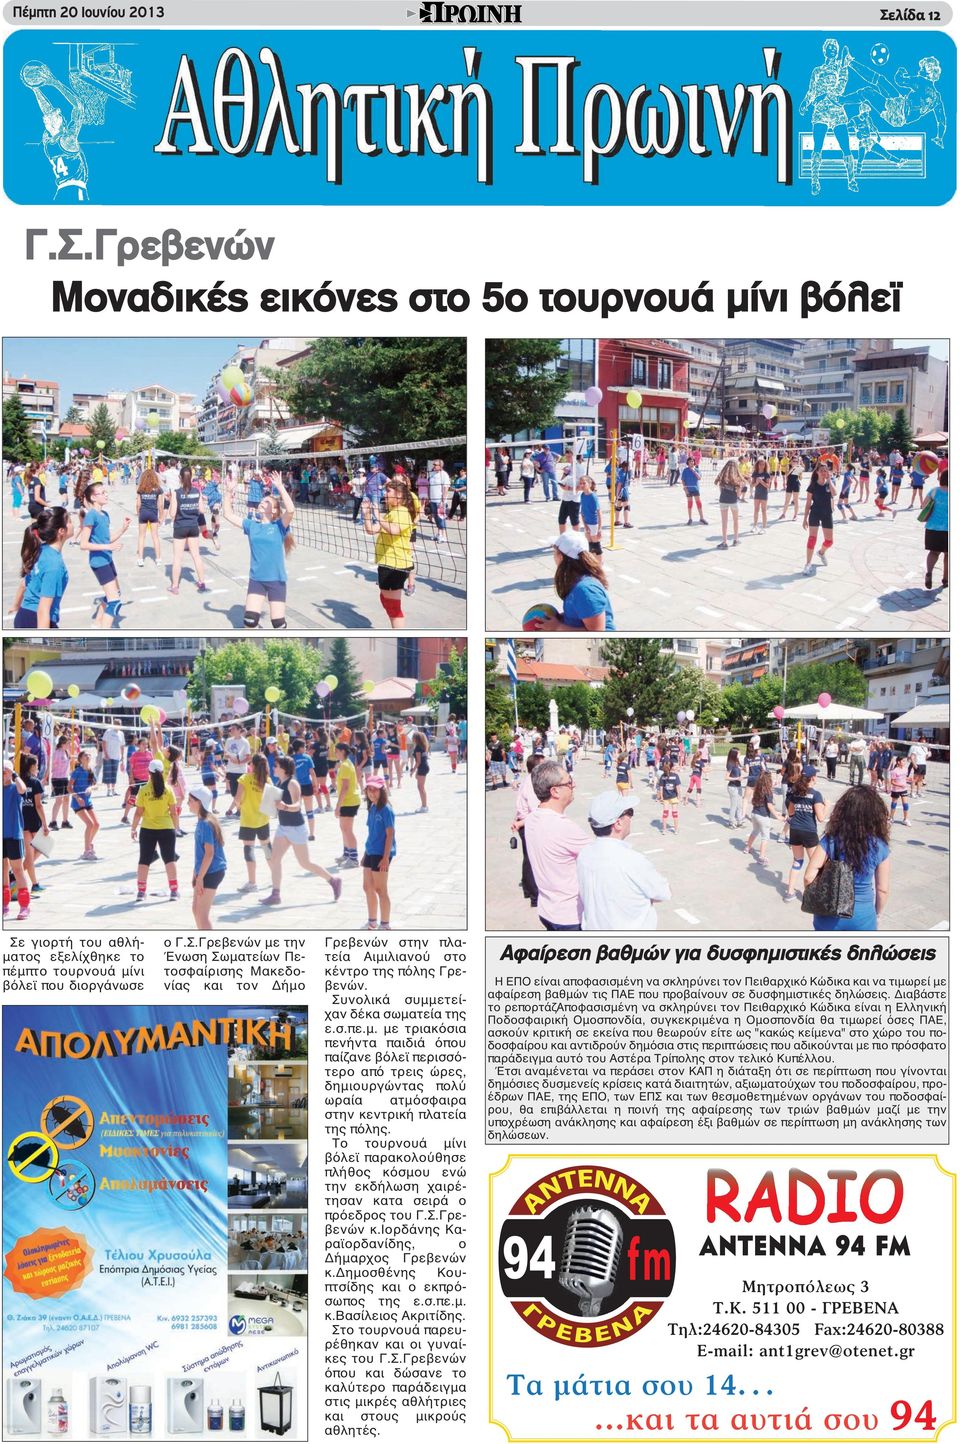 Το τουρνουά μίνι βόλεϊ παρακολούθησε πλήθος κόσμου ενώ την εκδήλωση χαιρέτησαν κατα σειρά ο πρόεδρος του Γ.Σ.Γρεβενών κ.ιορδάνης Καραϊορδανίδης, ο Δήμαρχος Γρεβενών κ.